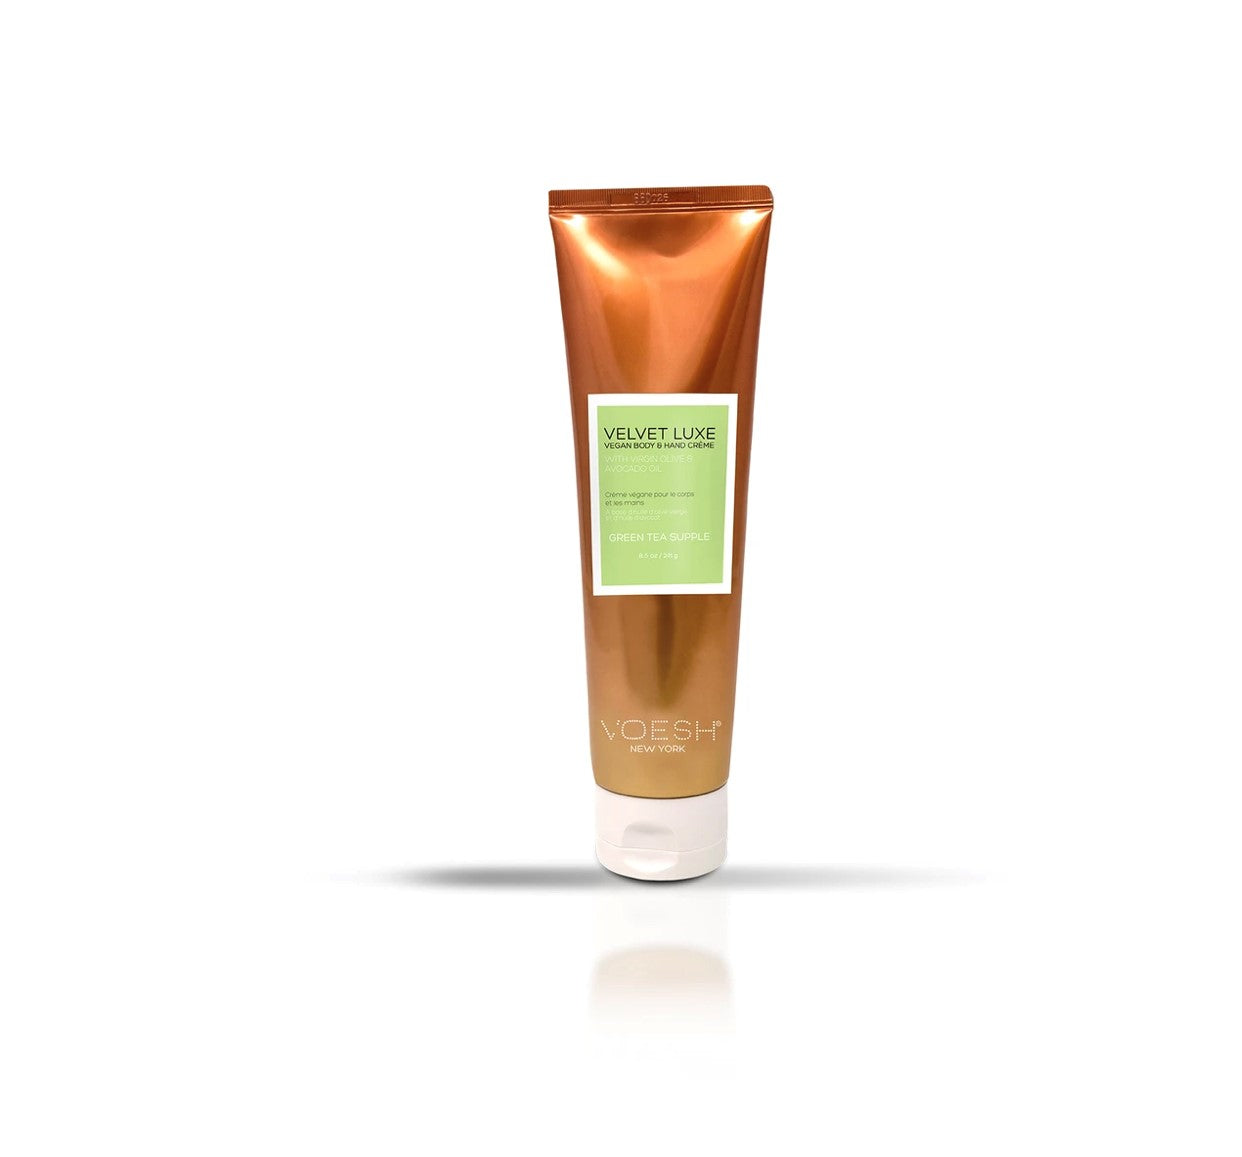 Velvet Luxe Vegan Håndcreme - Green Tea-SPA-VOESH-241-NR Kosmetik